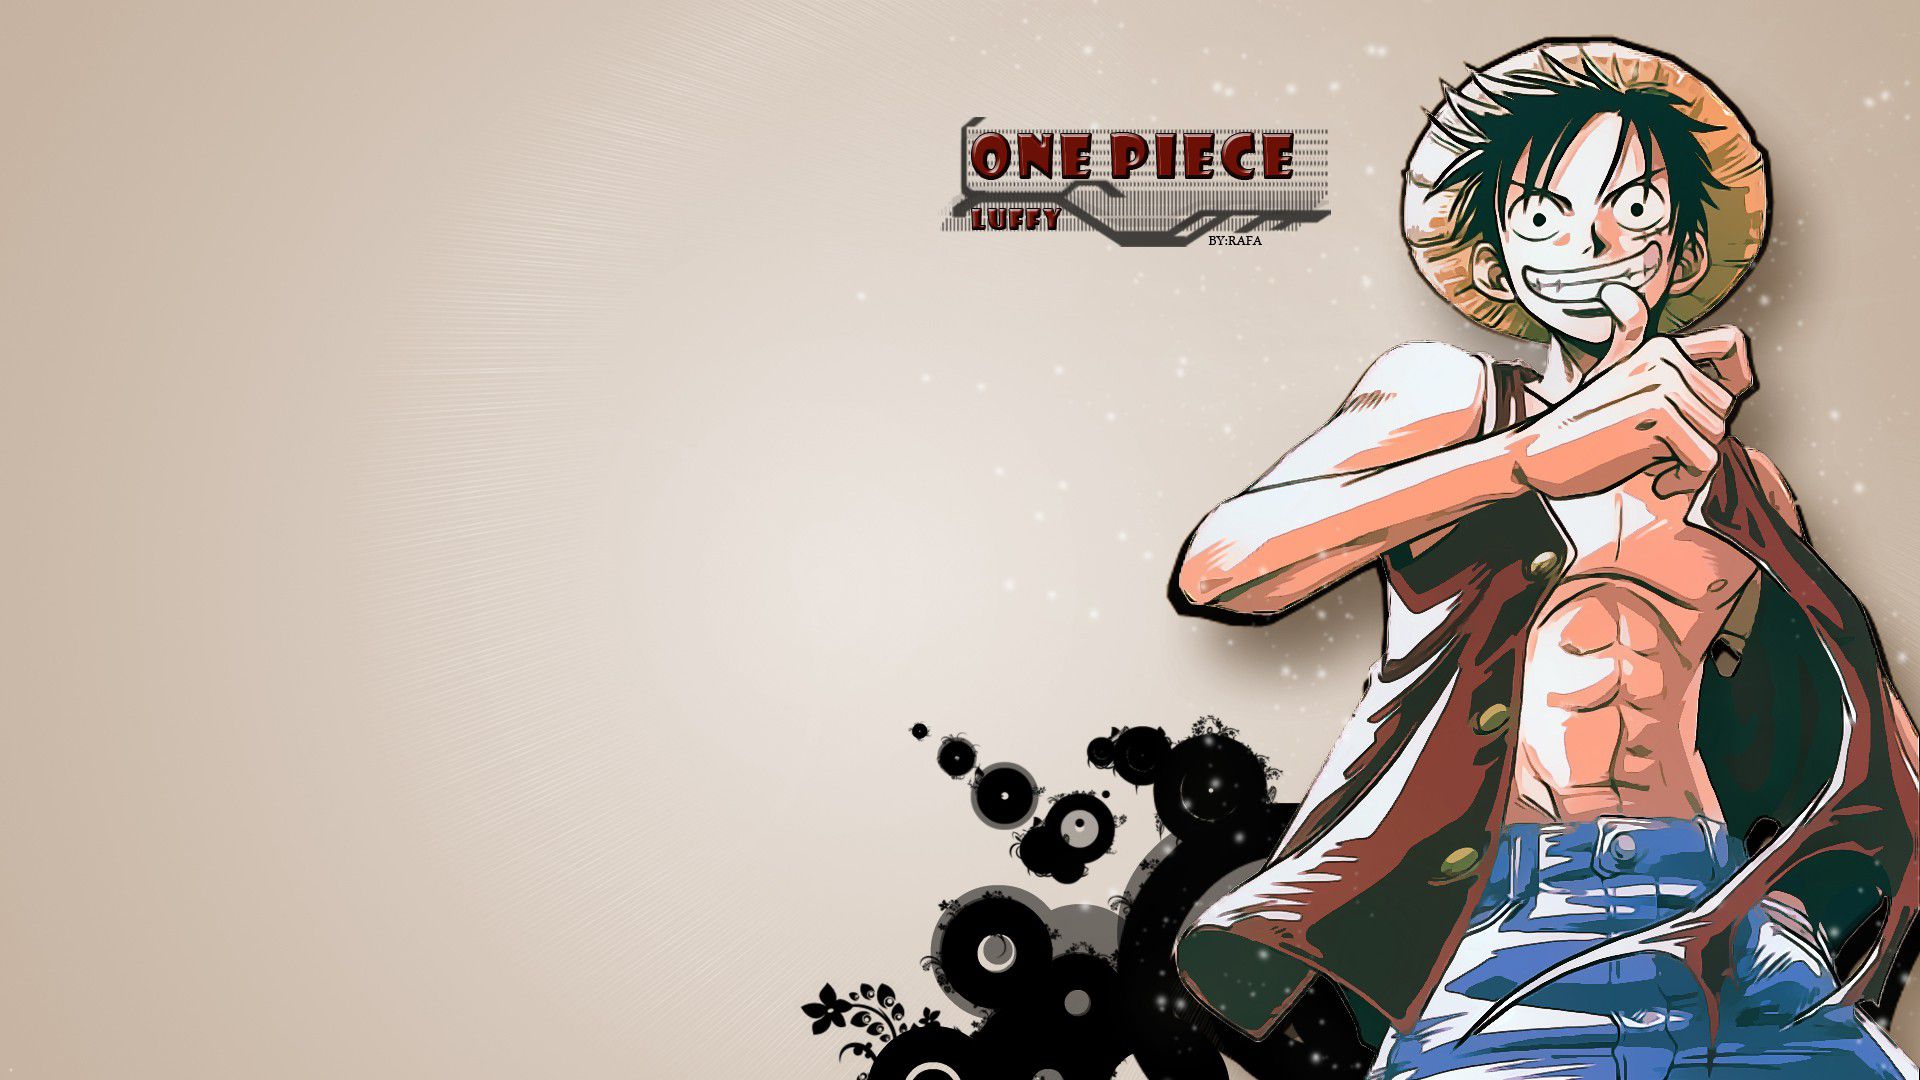 One Piece Wallpaper Hd - Luffy Wallpaper Onr Piece - HD Wallpaper 